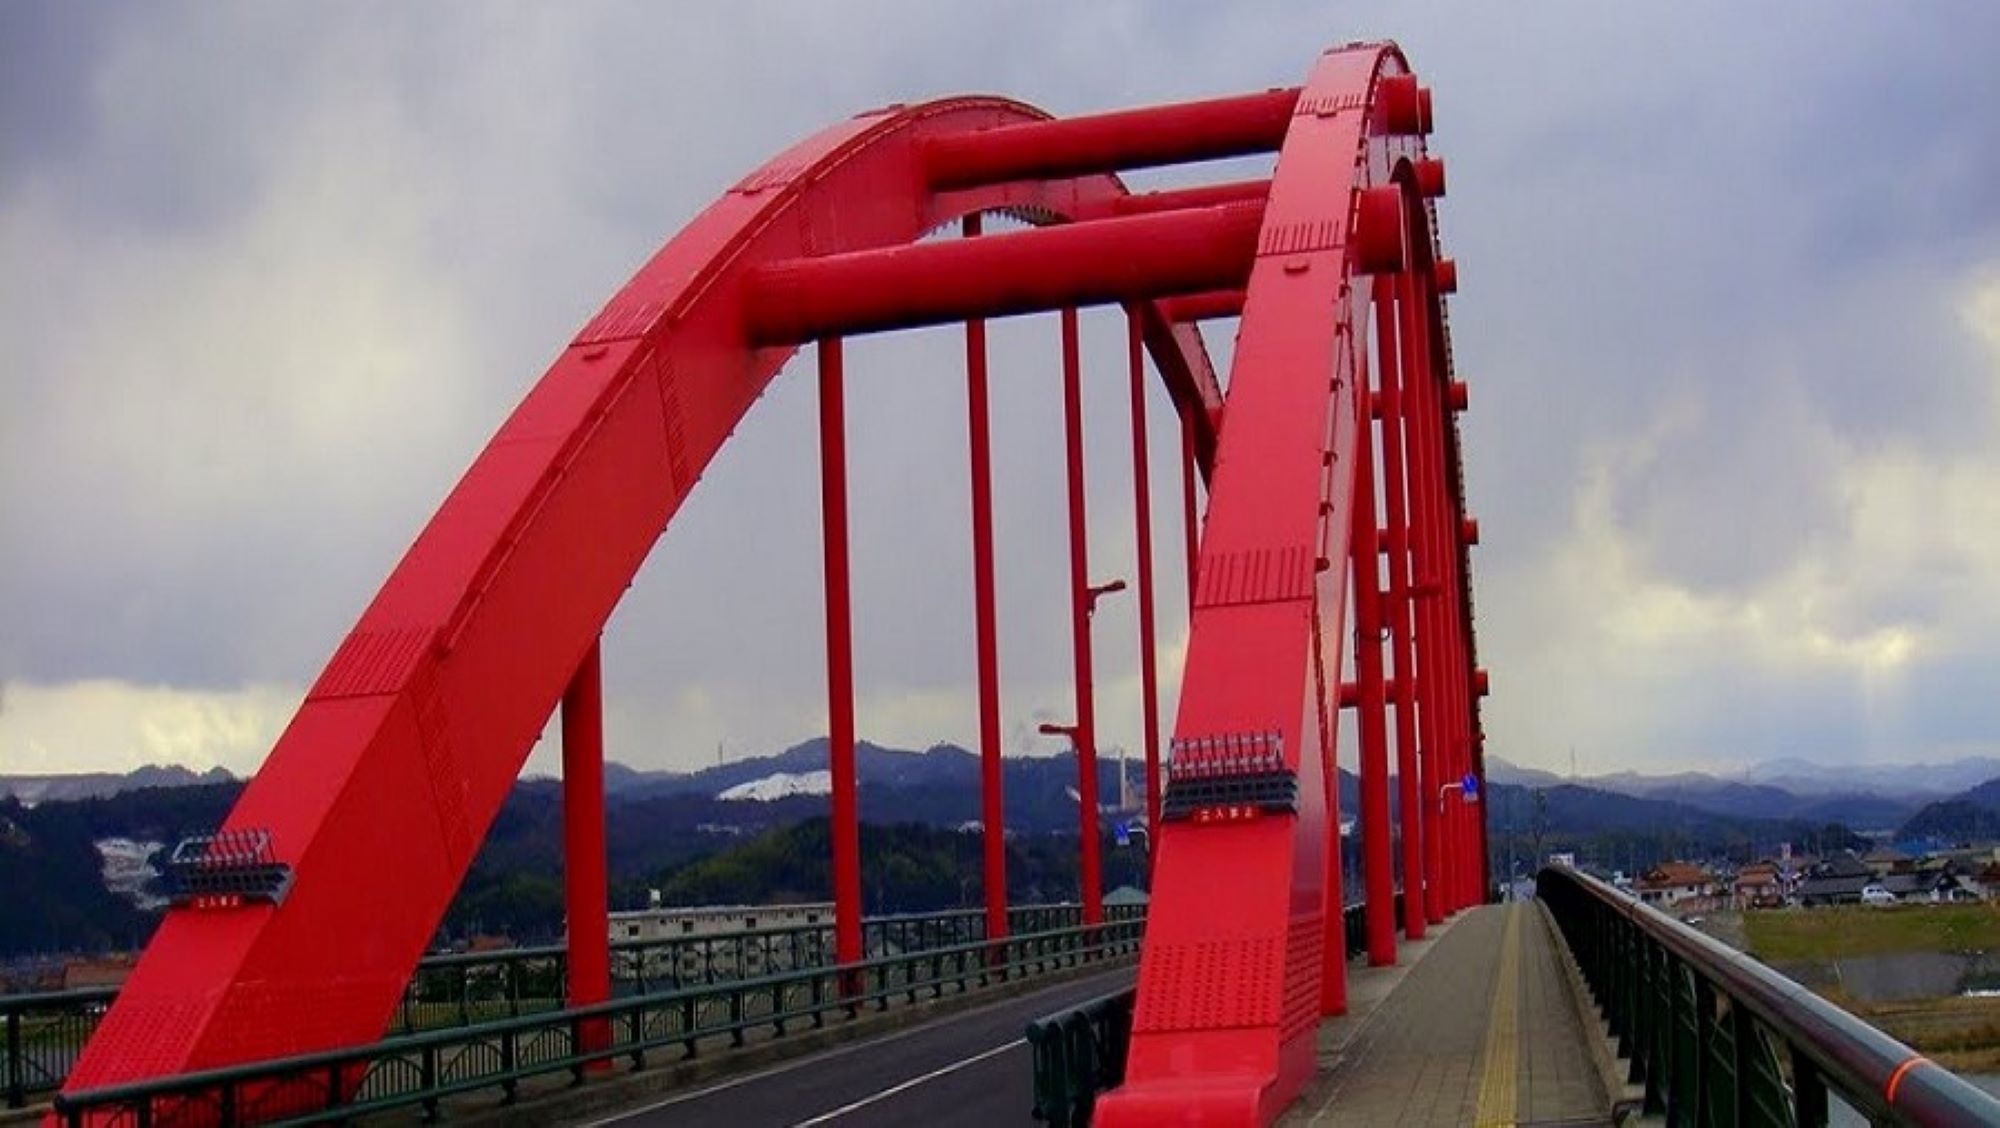 古志大橋赤い橋として、地元では有名な橋。この橋を目印にリッチガーデンを目指せば着きます！！